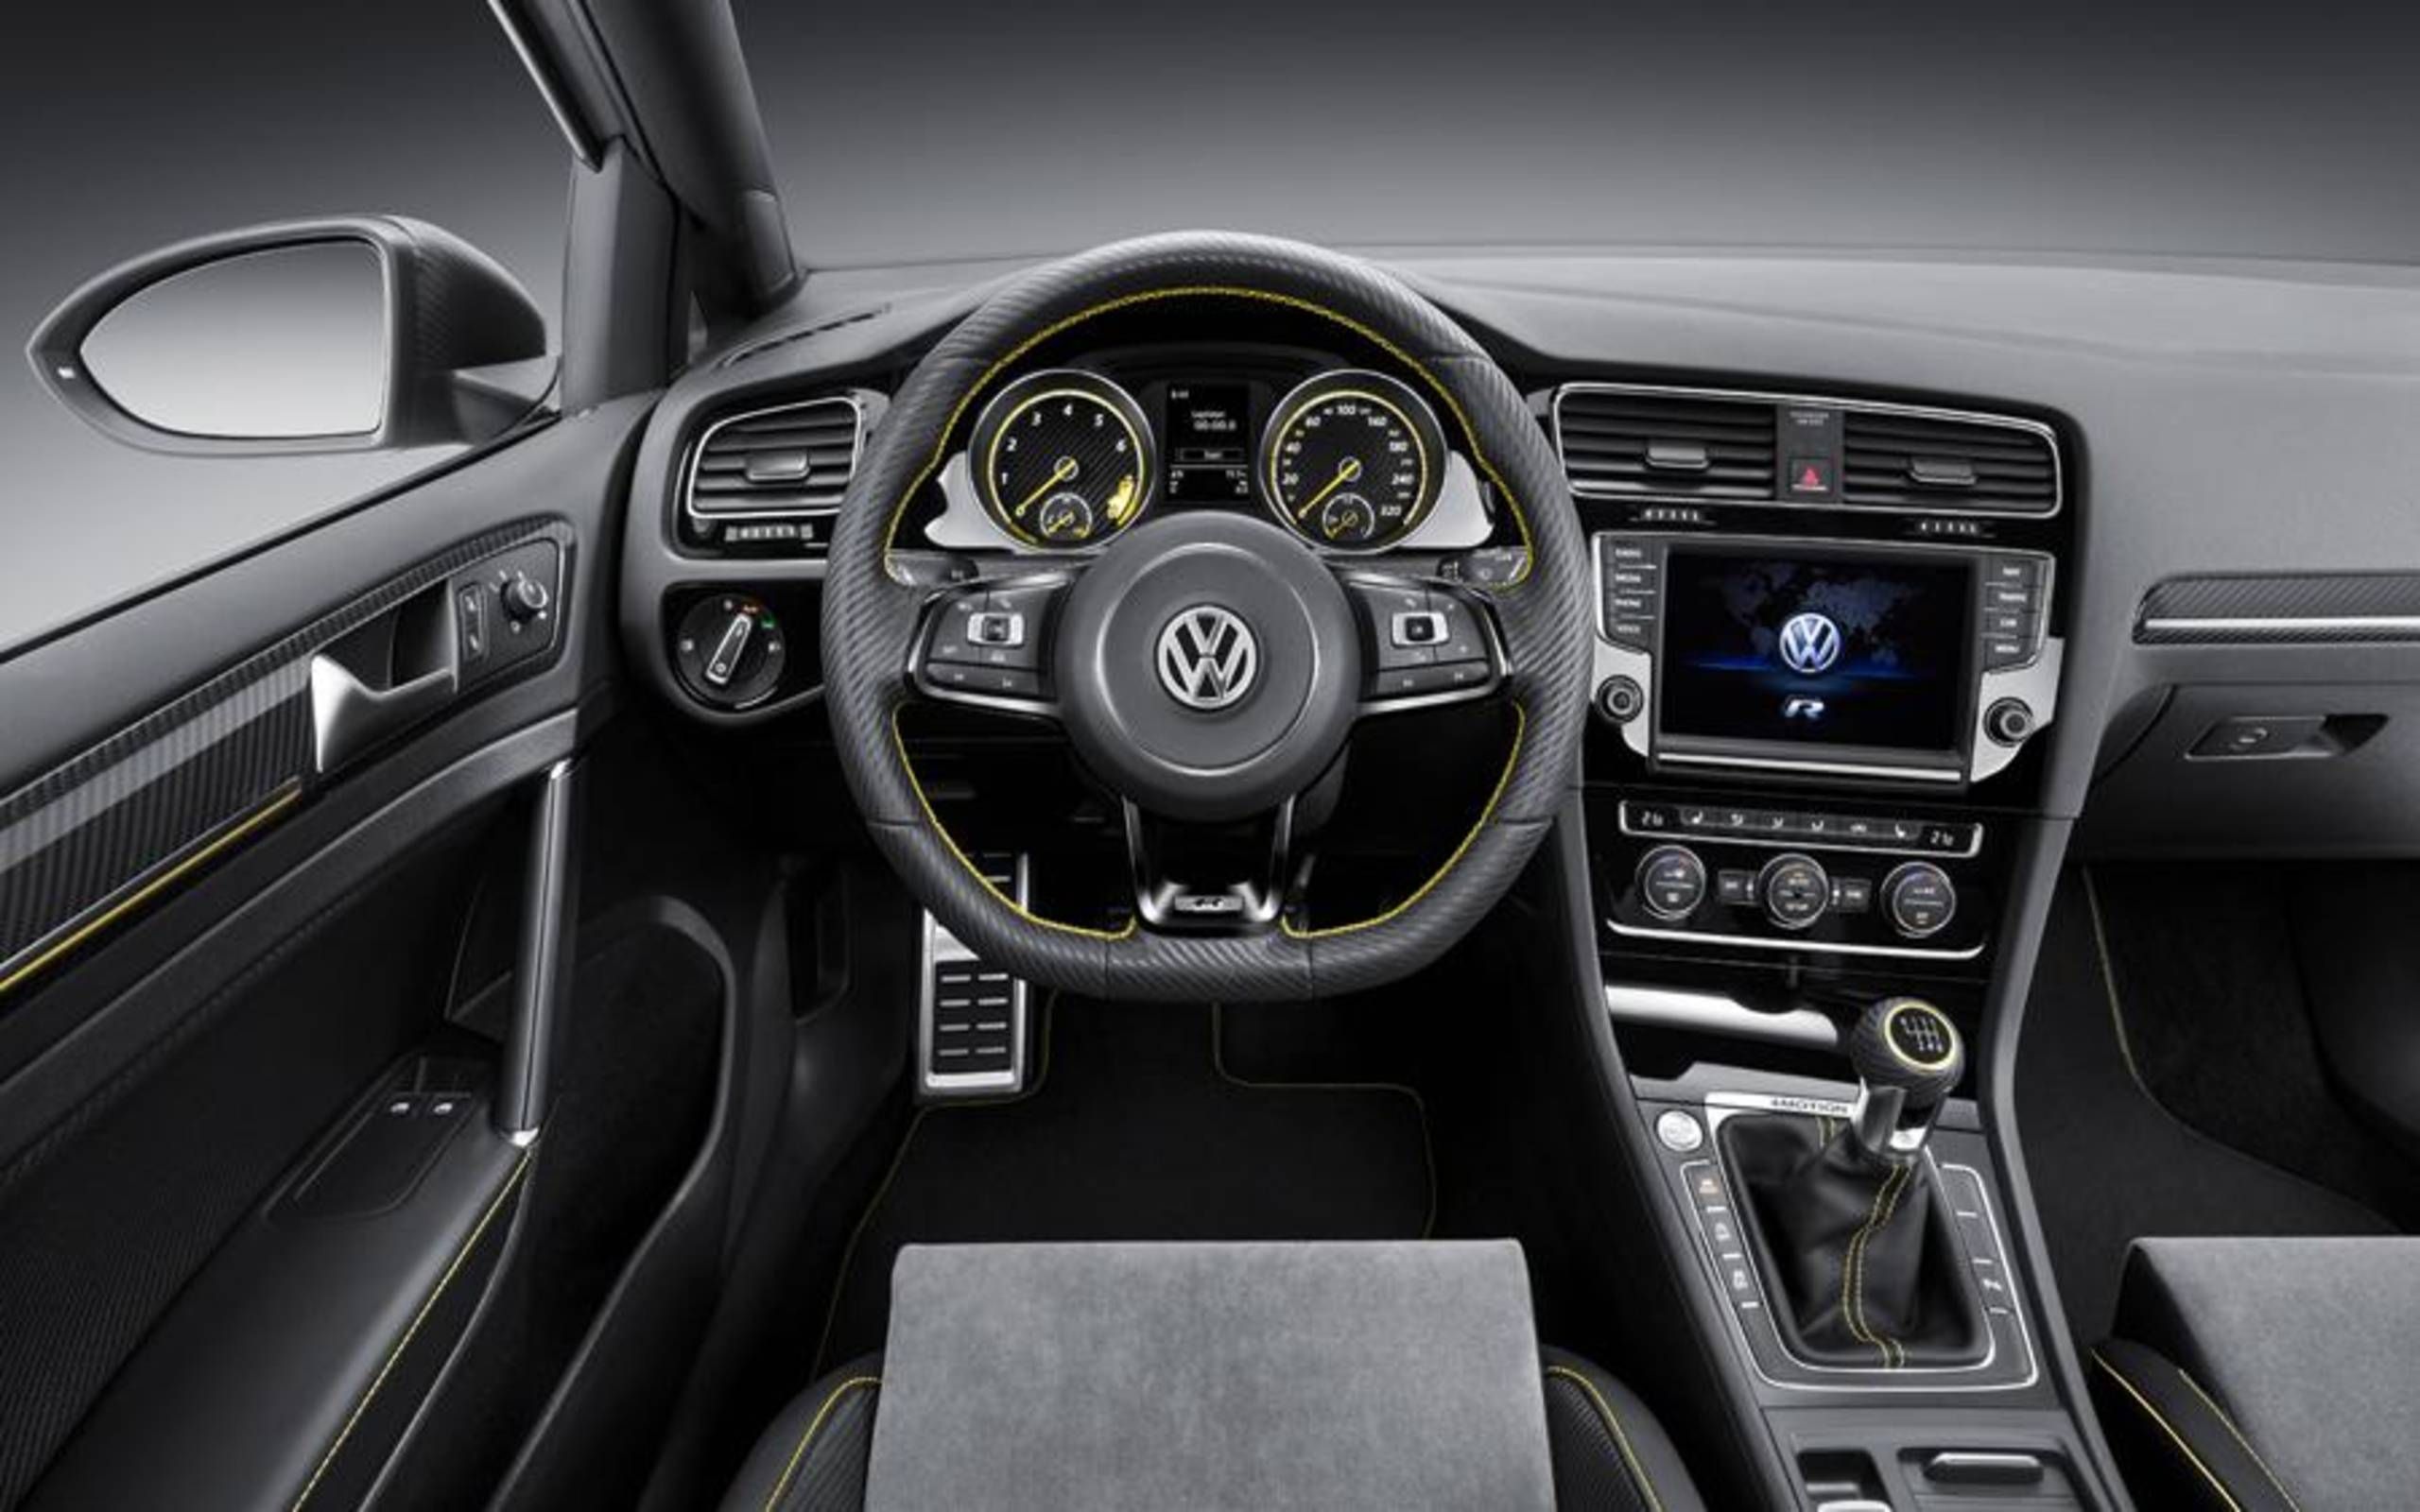 Volkswagen Golf R400: Meet The Hottest Hatch